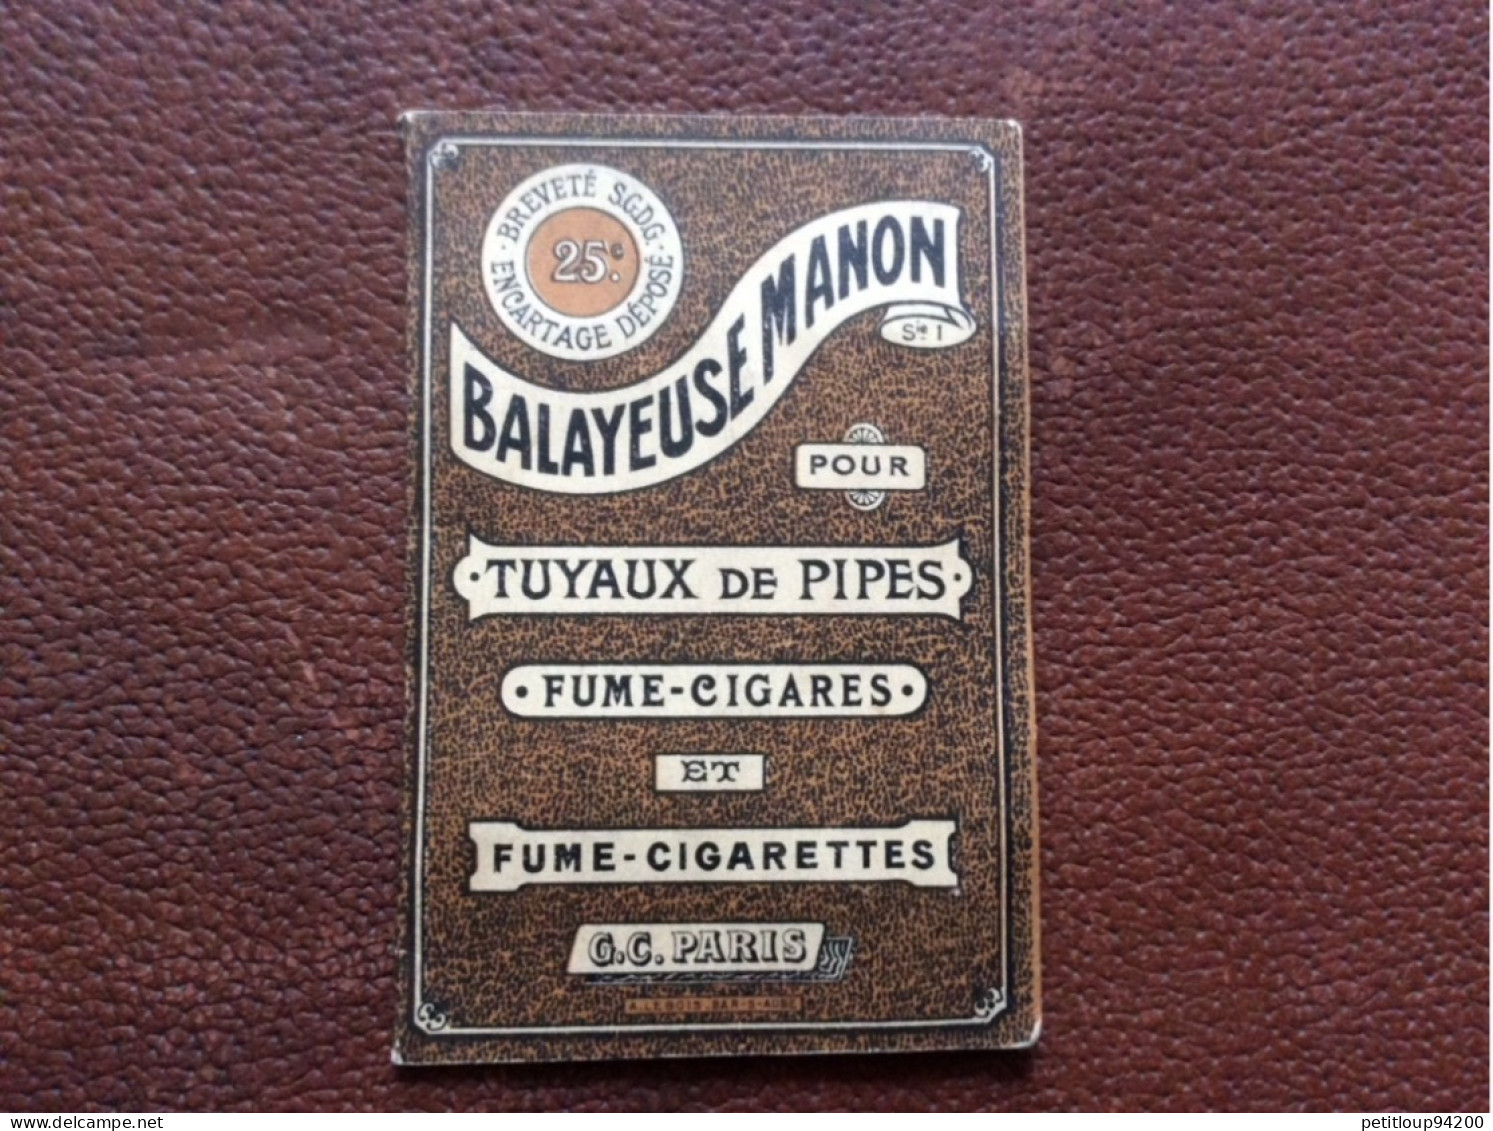 BALAYEUSE MANON  Tuyaux De Pipes  Fume-Cigares  Fume-Cigarettes  G.C  Paris  A.LEBOIS  Bar-s-Aube - Non Classés